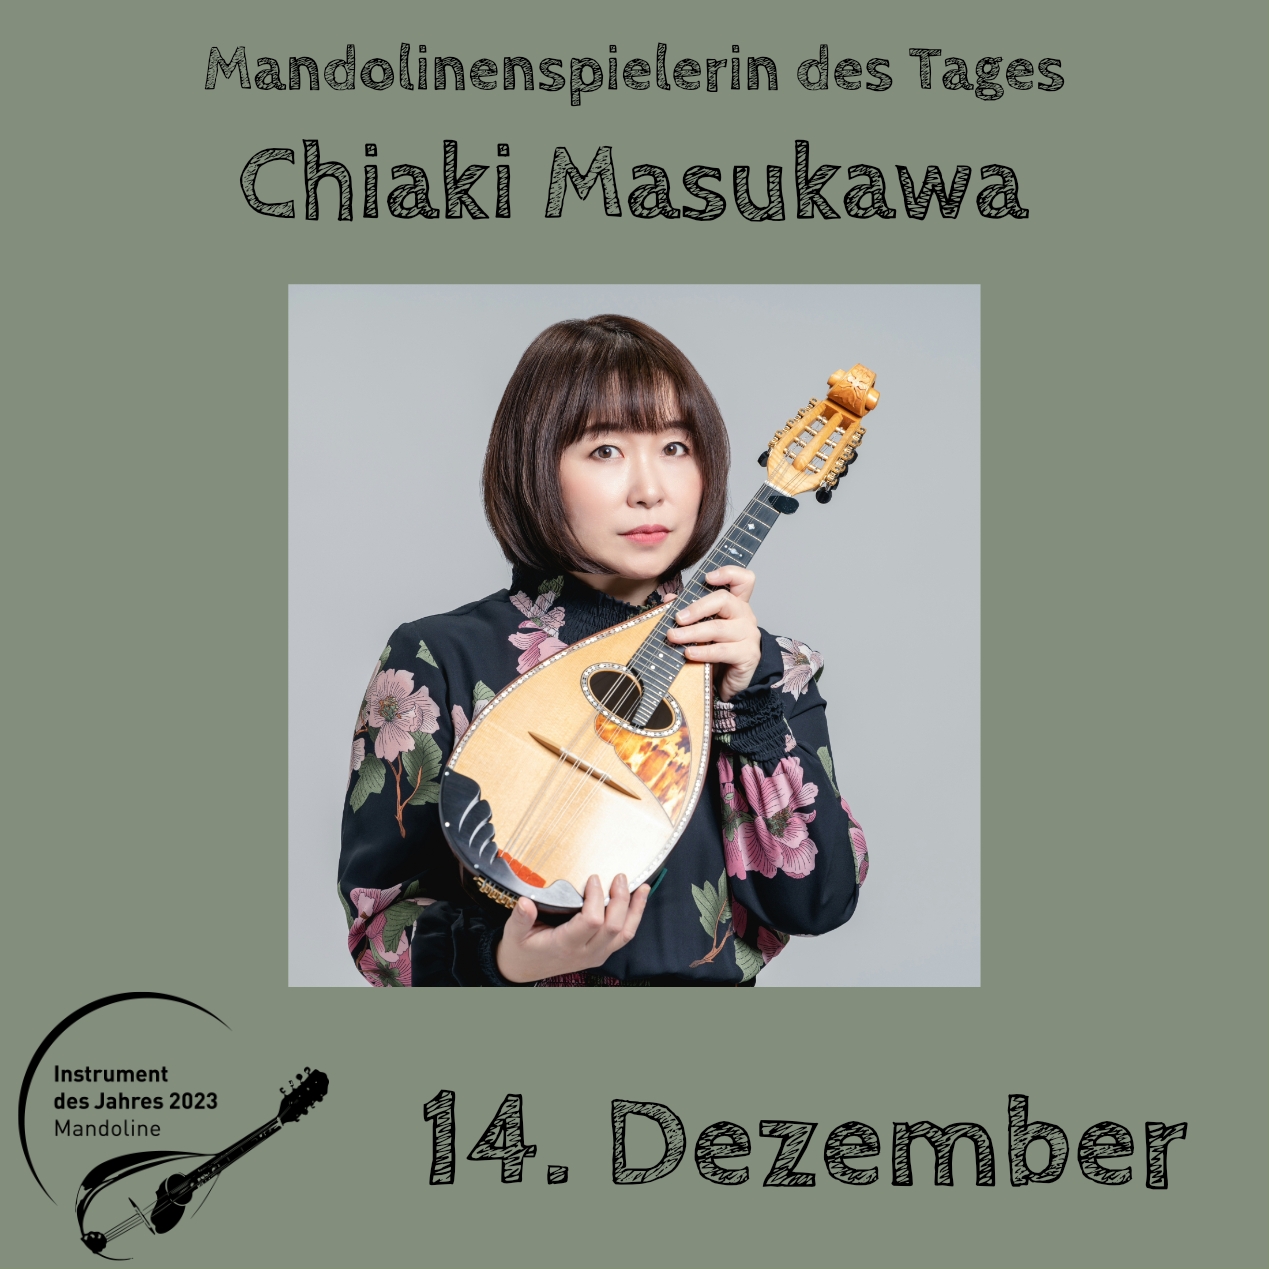 14. Dezember - Chiaki Masukawa Instrument des Jahres 2023 Mandolinenspieler Mandolinenspielerin des Tages